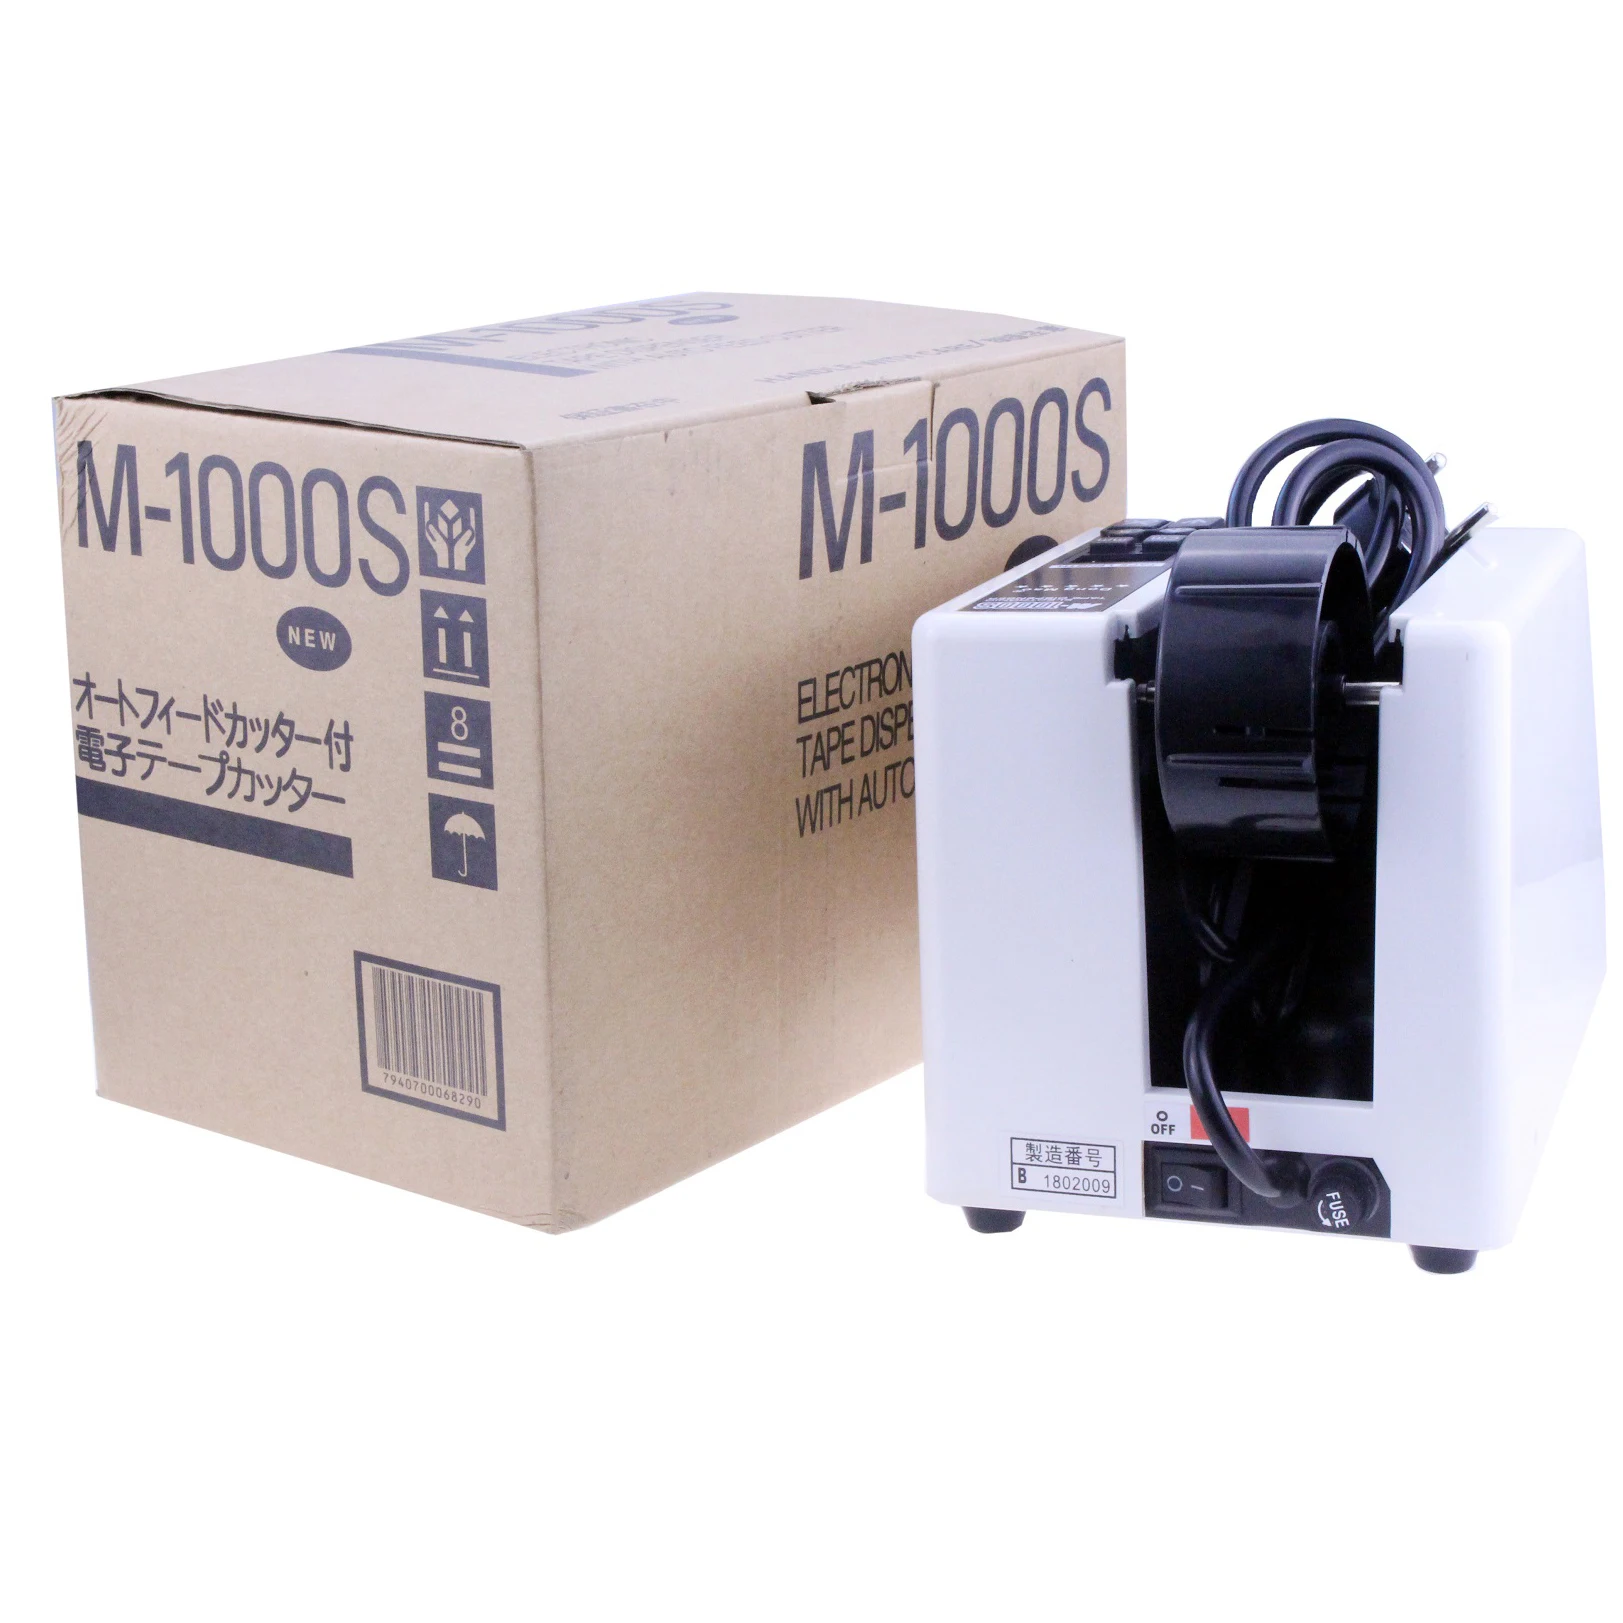 New type Automatic Tape Dispenser Electric Adhesive Tape Cutter Cutting Machine High Temperature Belt Cutter M-1000S